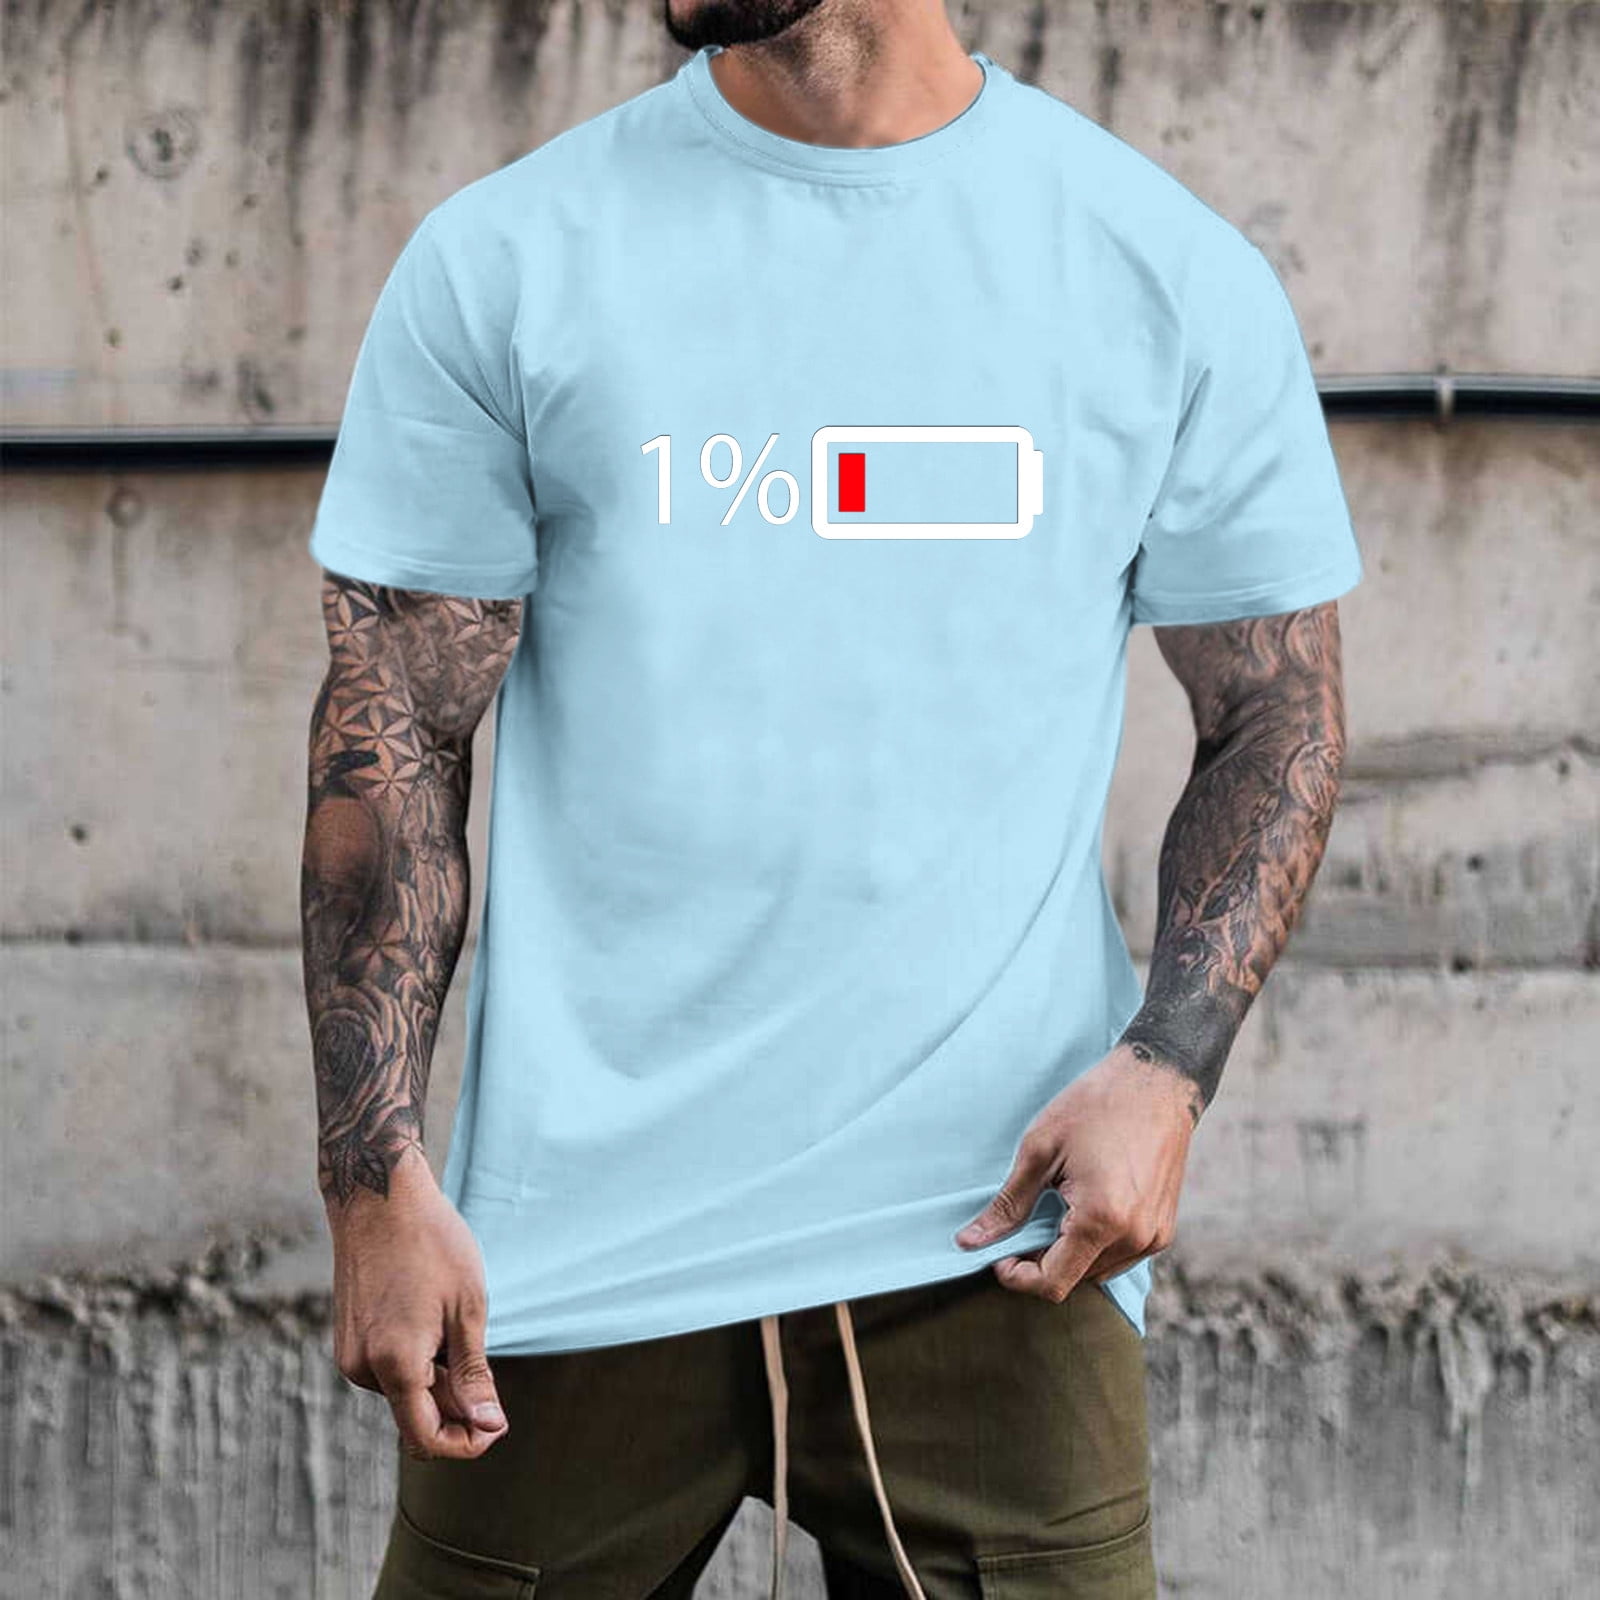 Aayomet Mens Graphic T Shirt Summer Casual Print T Shirt Blouse Sleeve Men Shirts Gym Workout Light blue,M - Walmart.com